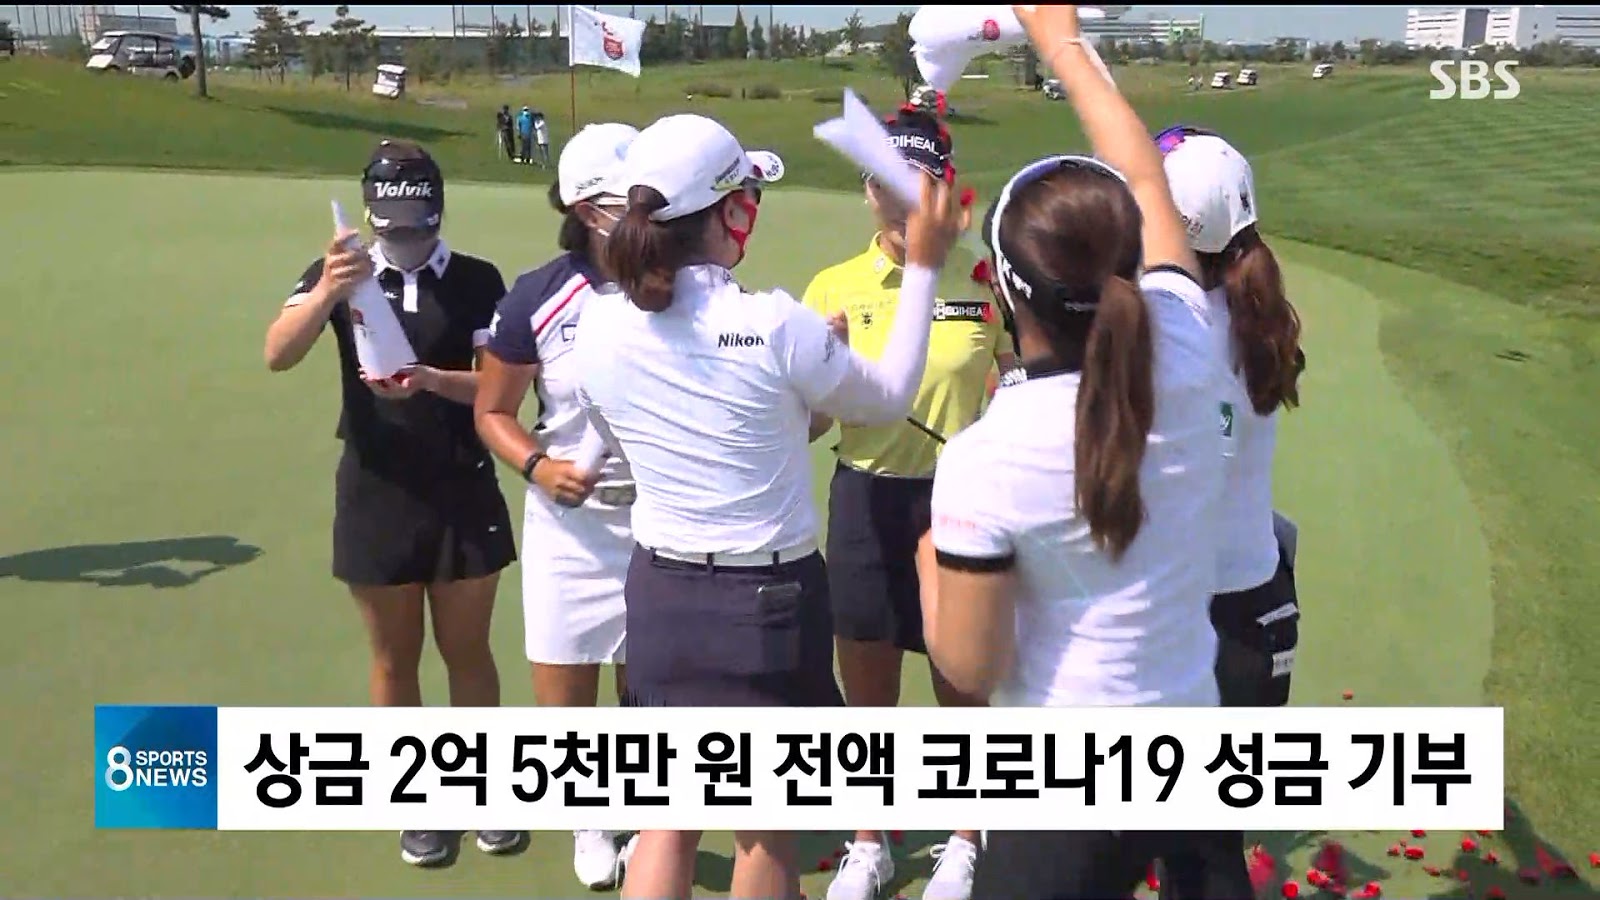 유소연 한국여자오픈 우승, 상금 전액 기부